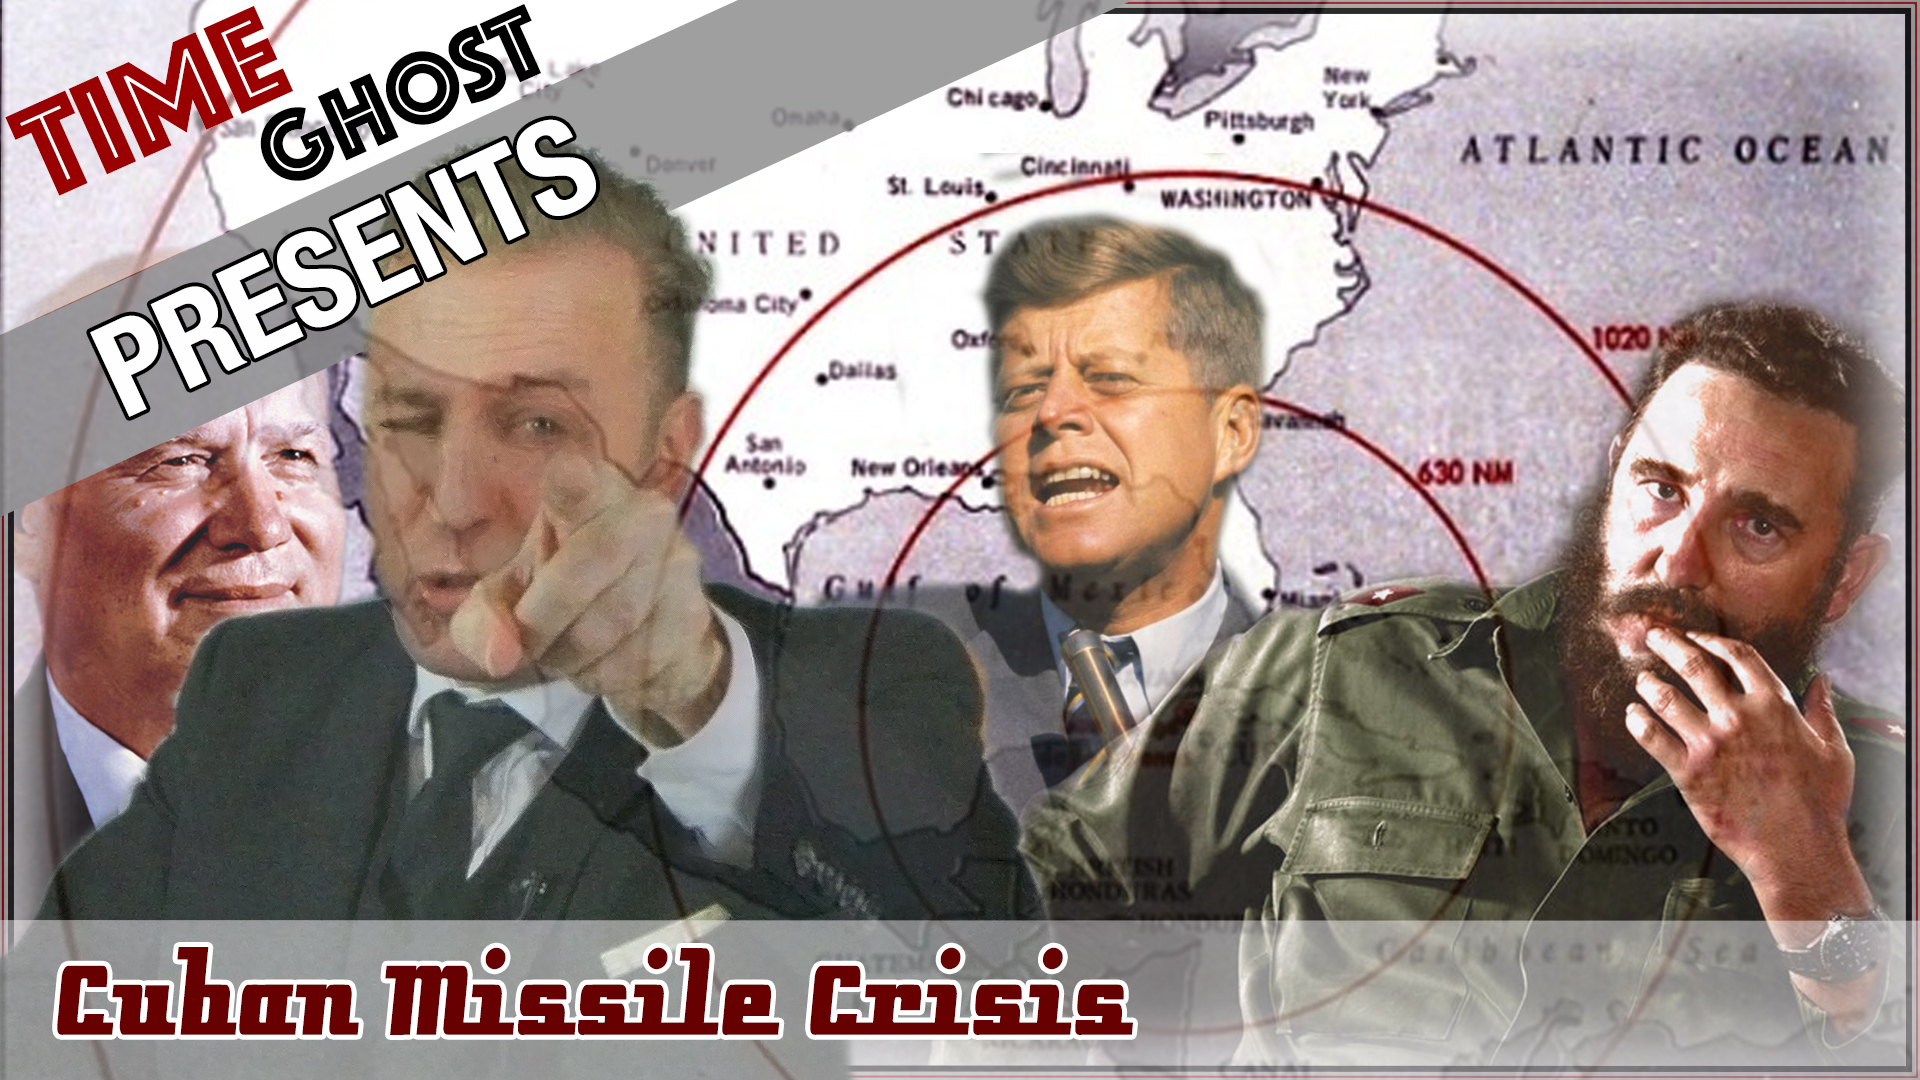 TimeGhost the Cuban Missile Crisis